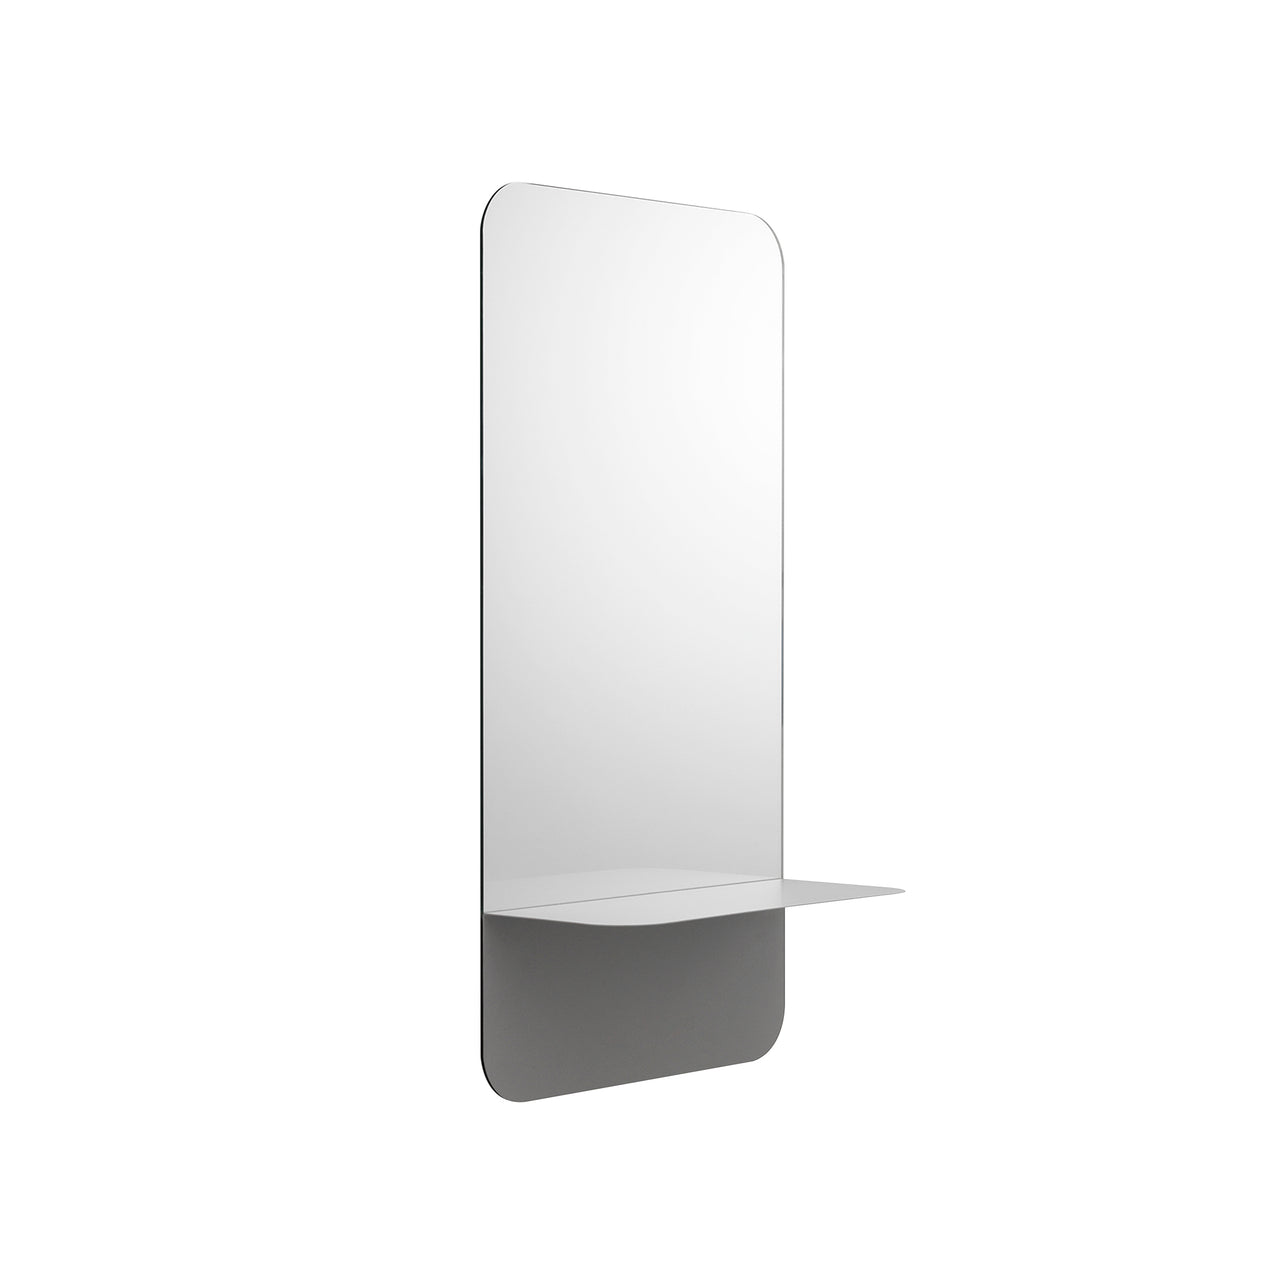 Horizon Mirror Collection: Rectangular + Vertical + Grey